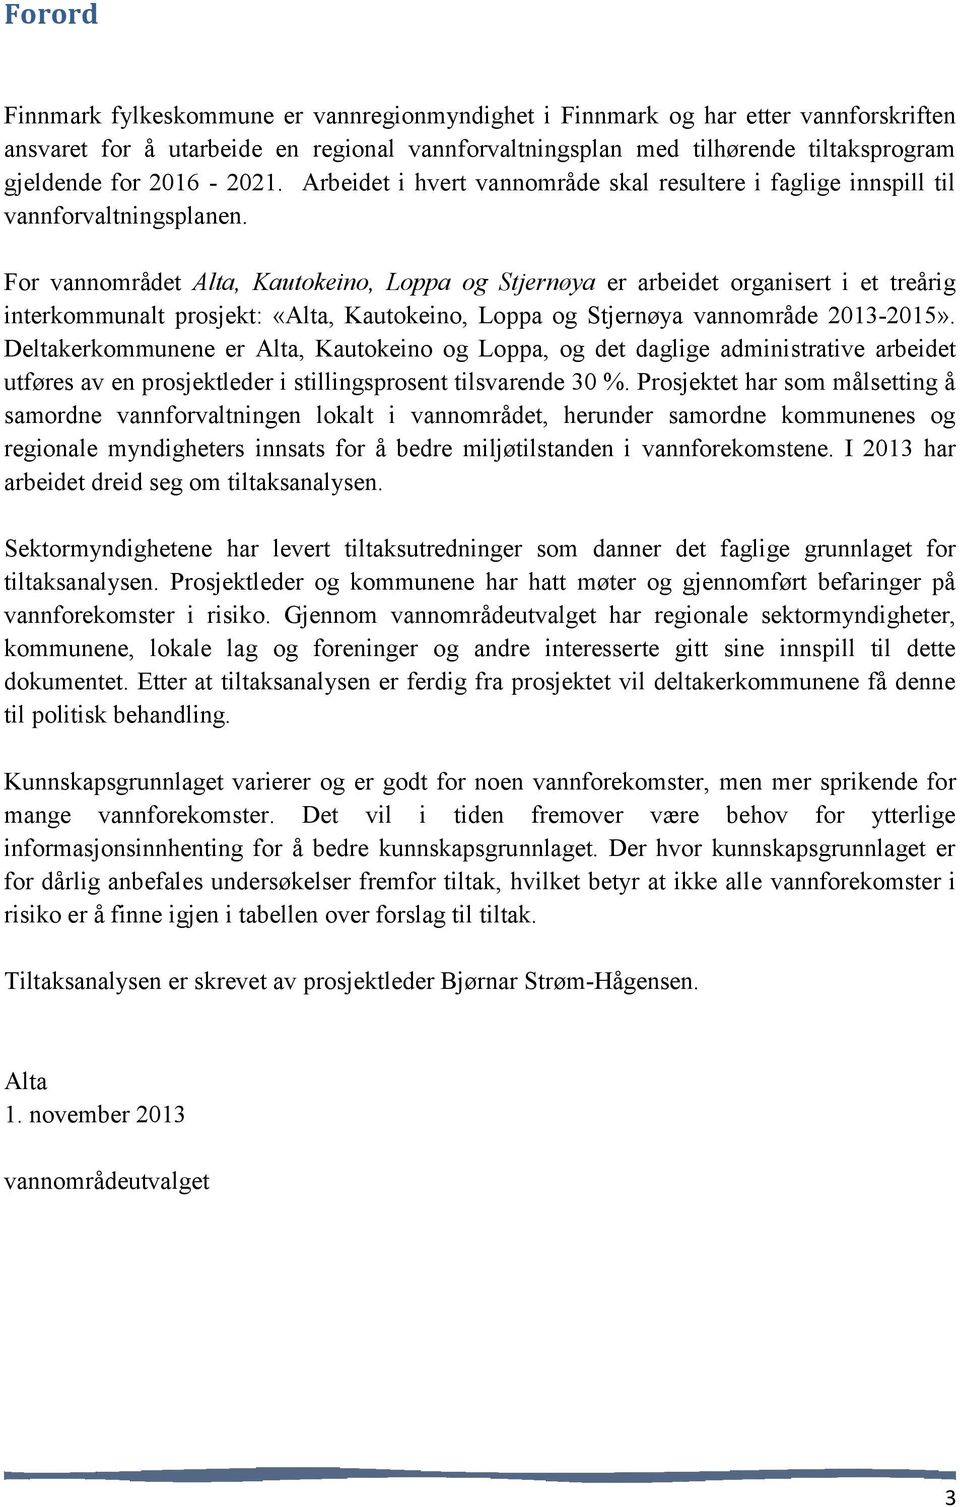 For vannområdet Alta, Kautokeino, Loppa og Stjernøya er arbeidet organisert i et treårig interkommunalt prosjekt: «Alta, Kautokeino, Loppa og Stjernøya vannområde 2013-2015».